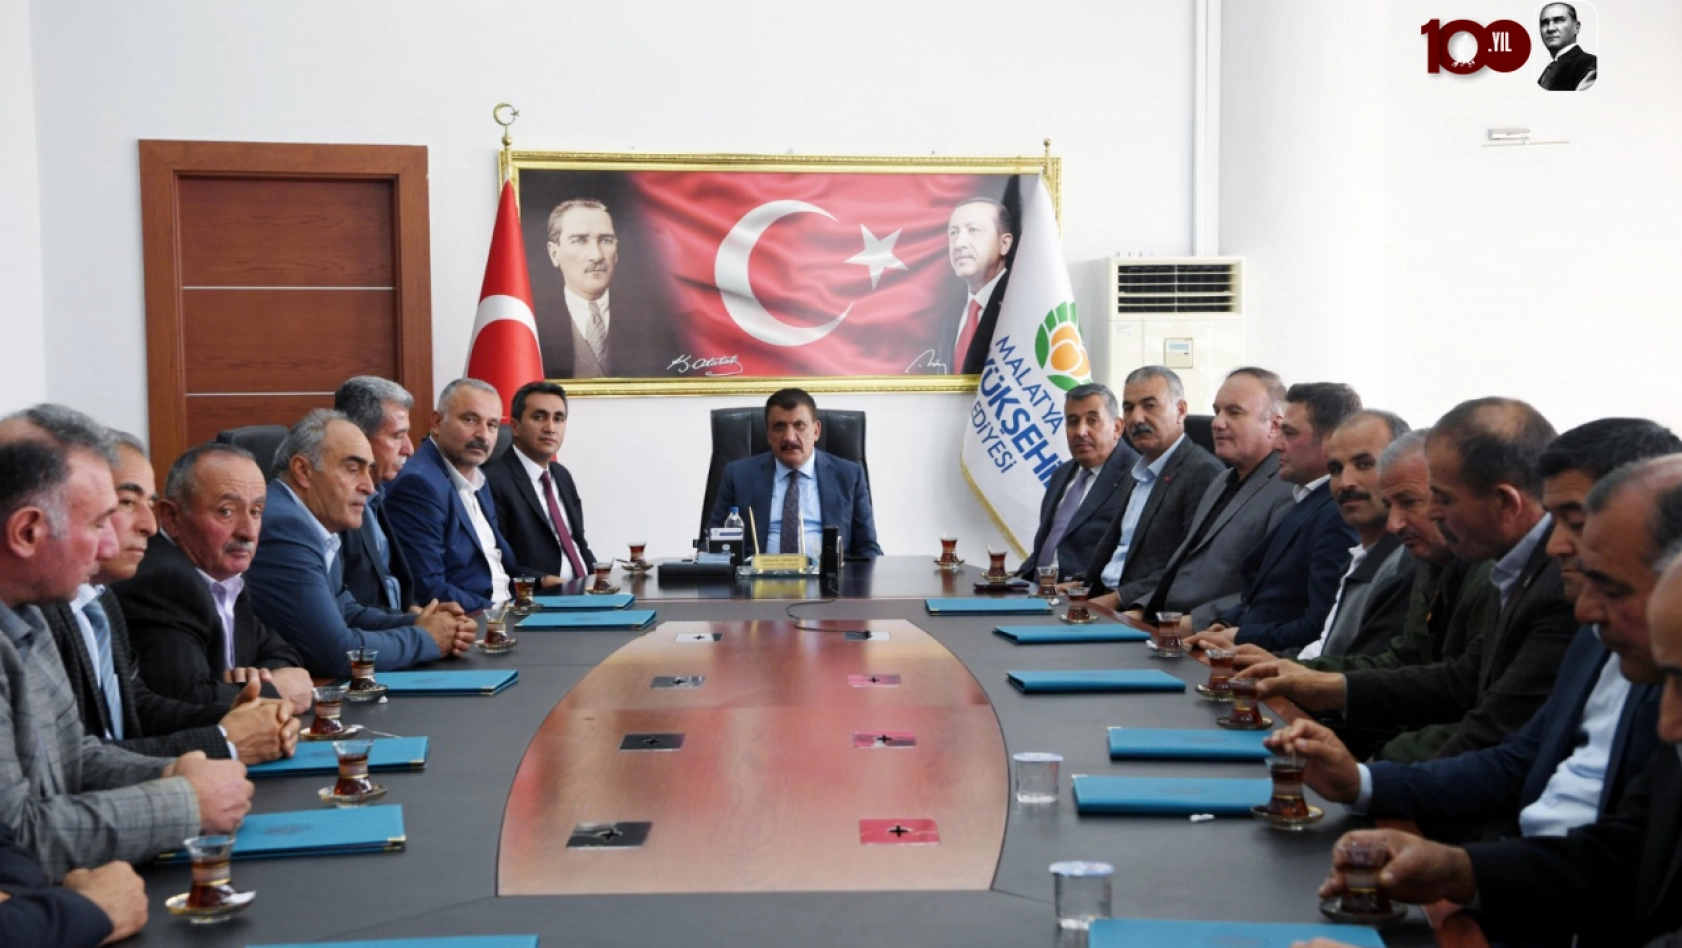 Başkan Gürkan, Kuluncak İlçesindeki Birlik Ve Beraberlik Çok Güzel Bir Örnek